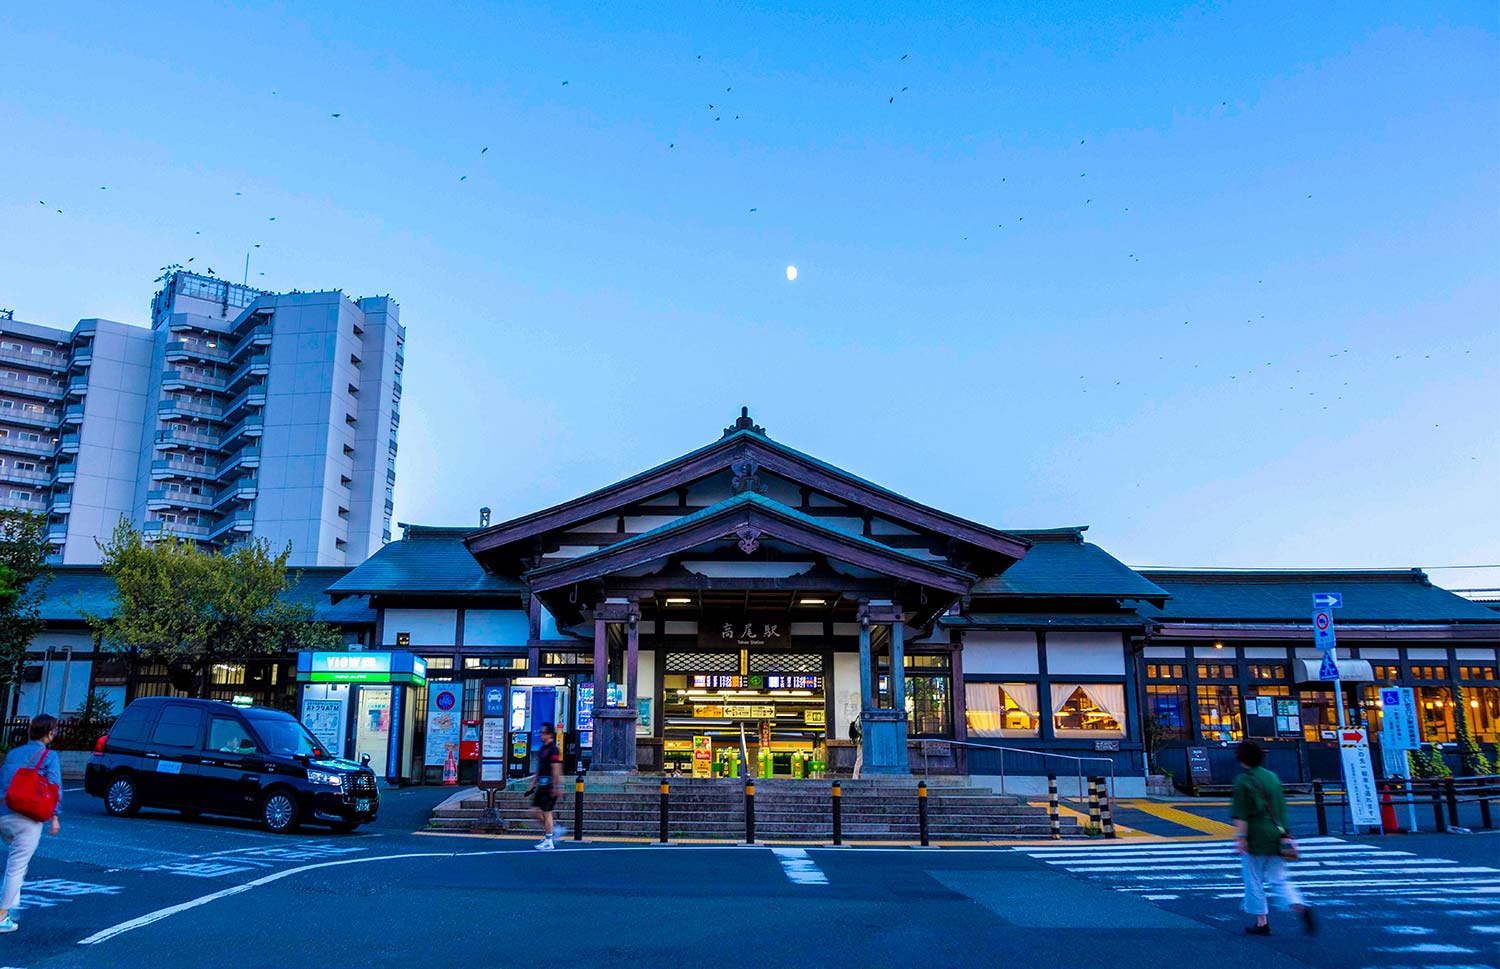 北口から見た高尾駅は寺院風。ここからバスで小仏峠方面へ向かう登山者も。